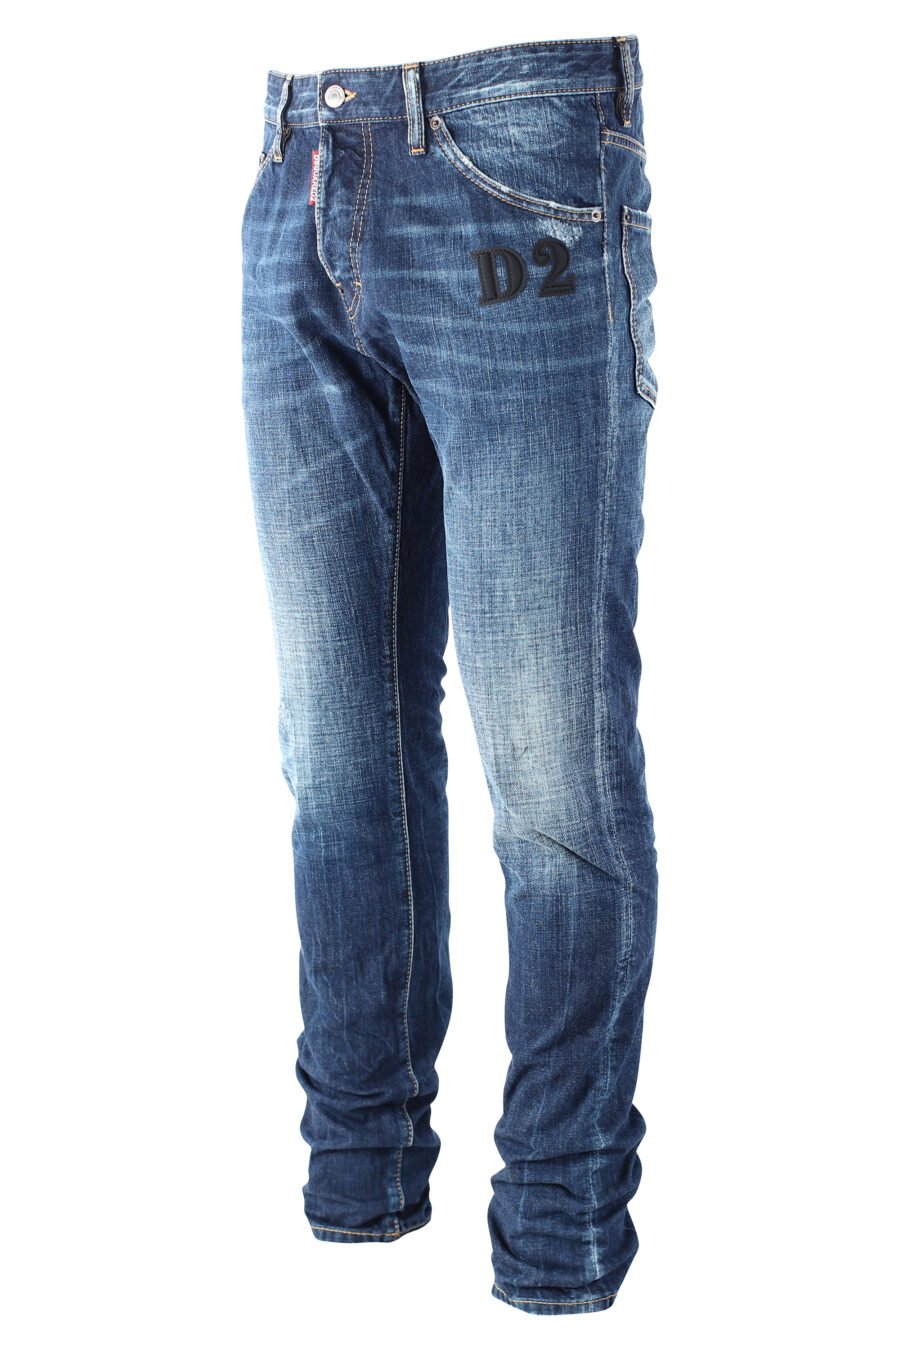 Calças de ganga "cool guy jean" azuis com logótipo "D2" preto - IMG 9688